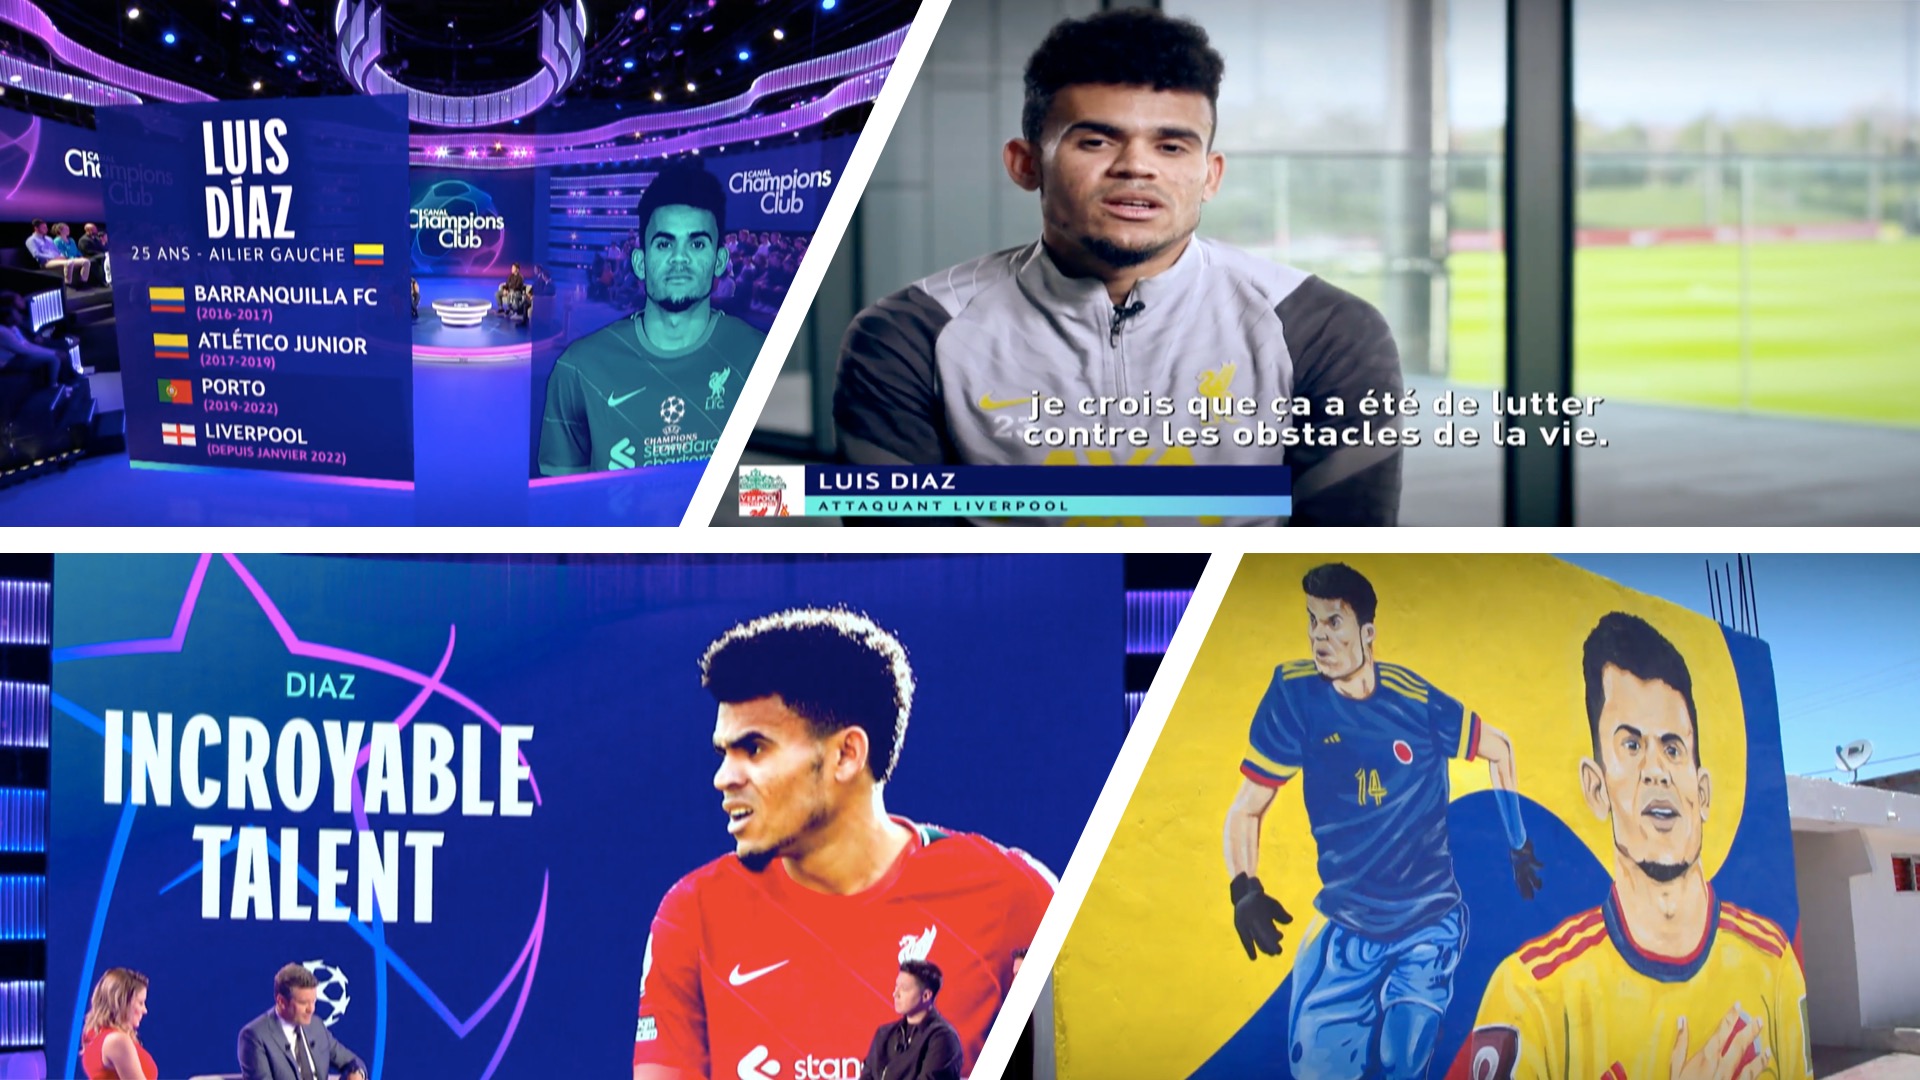 Luis Díaz, talento increíble. Documental francés sobre la vida y recorrido del fenómeno de Liverpool y la selección Colombia / (Vimeo: La Vista)